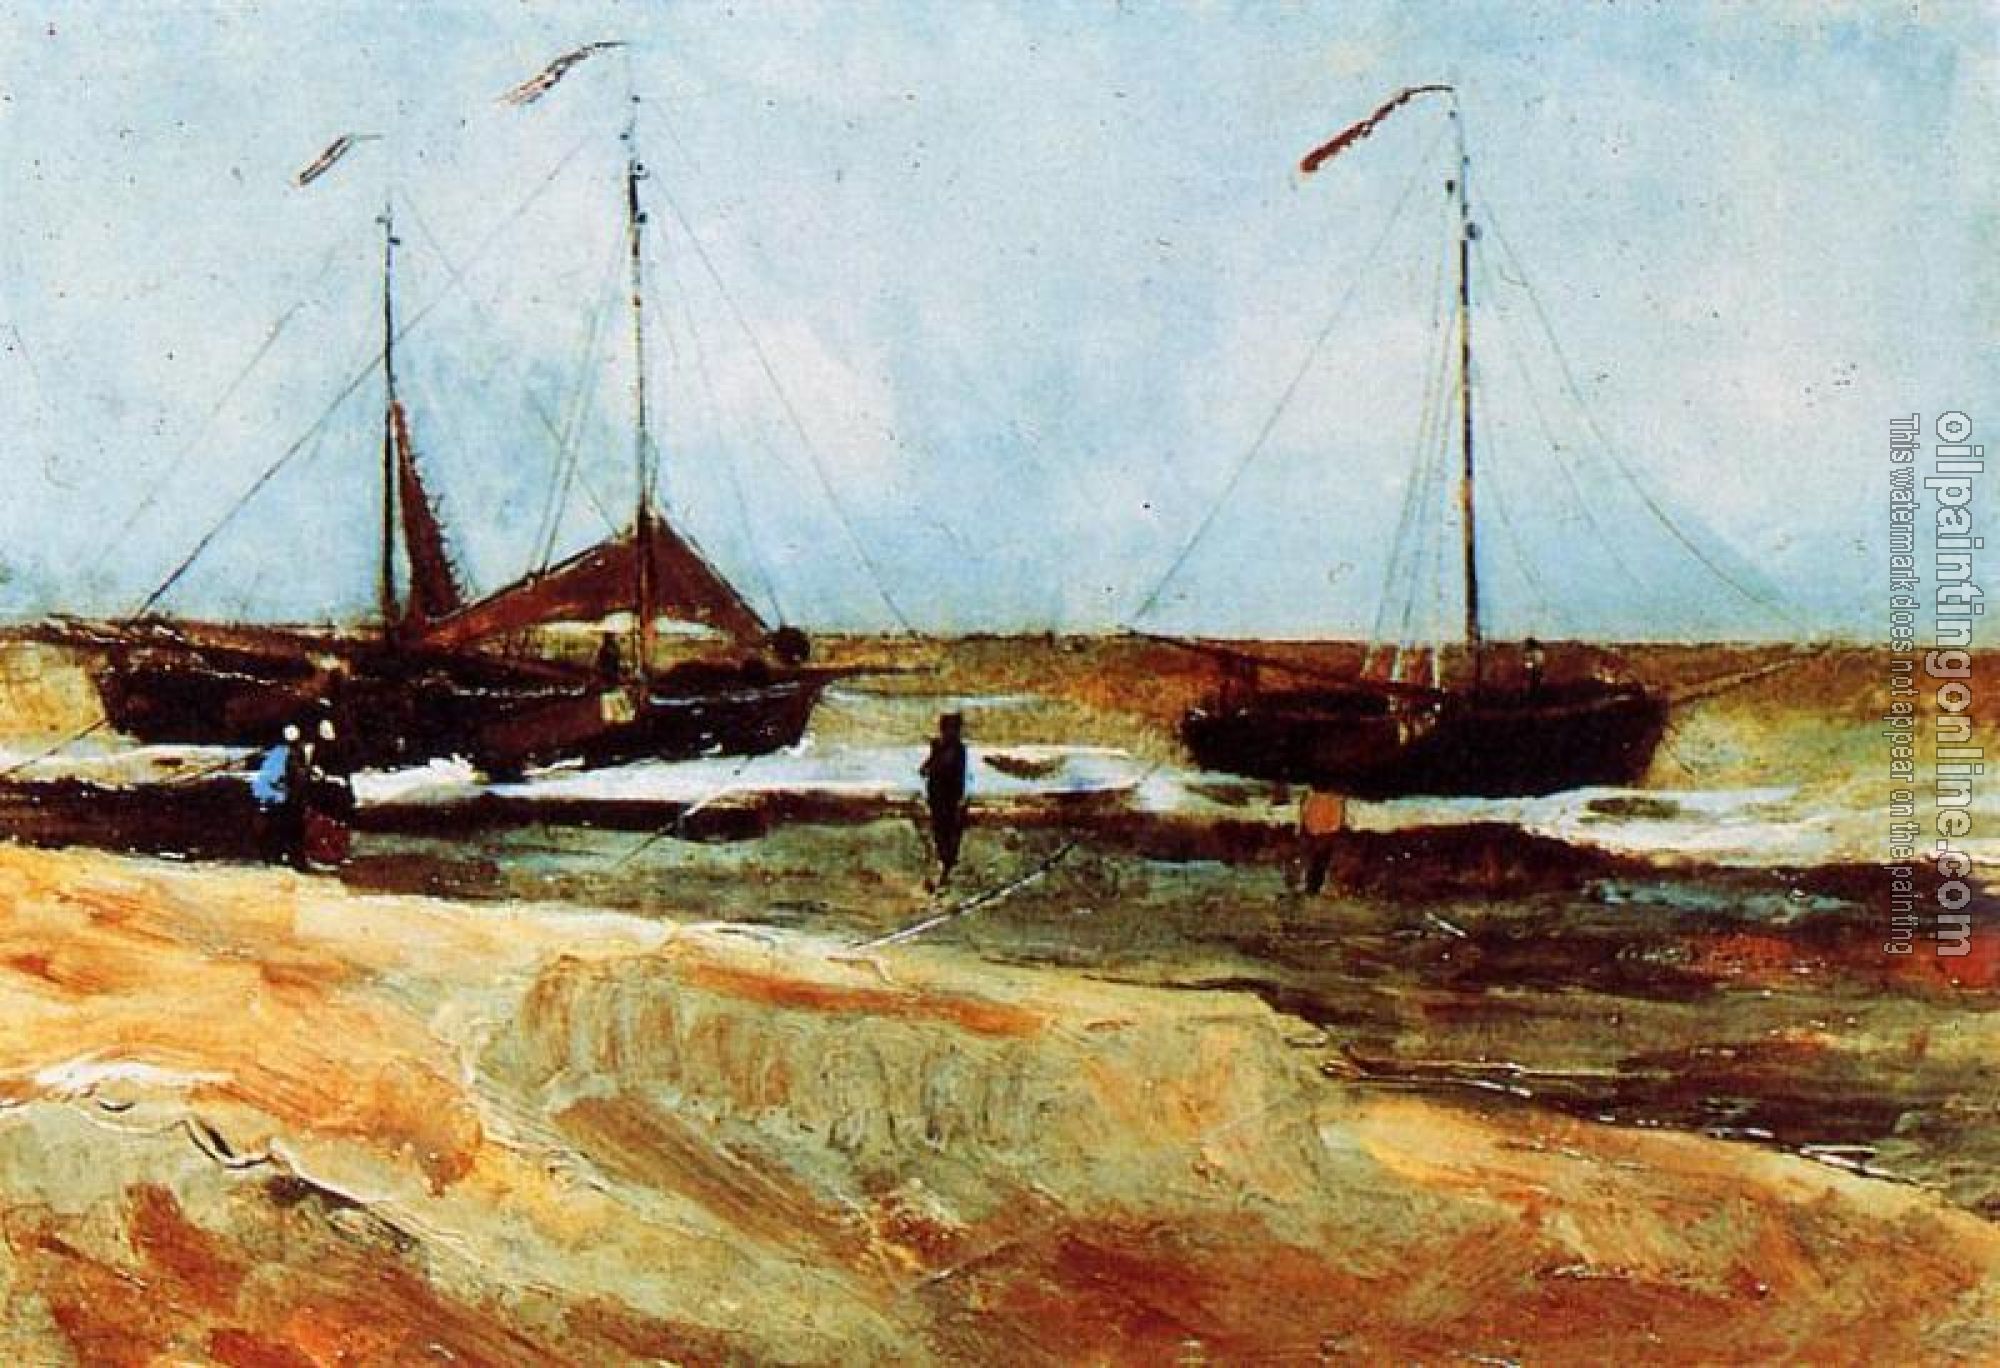 Gogh, Vincent van - Beach at Scheveningen in Calm Weather